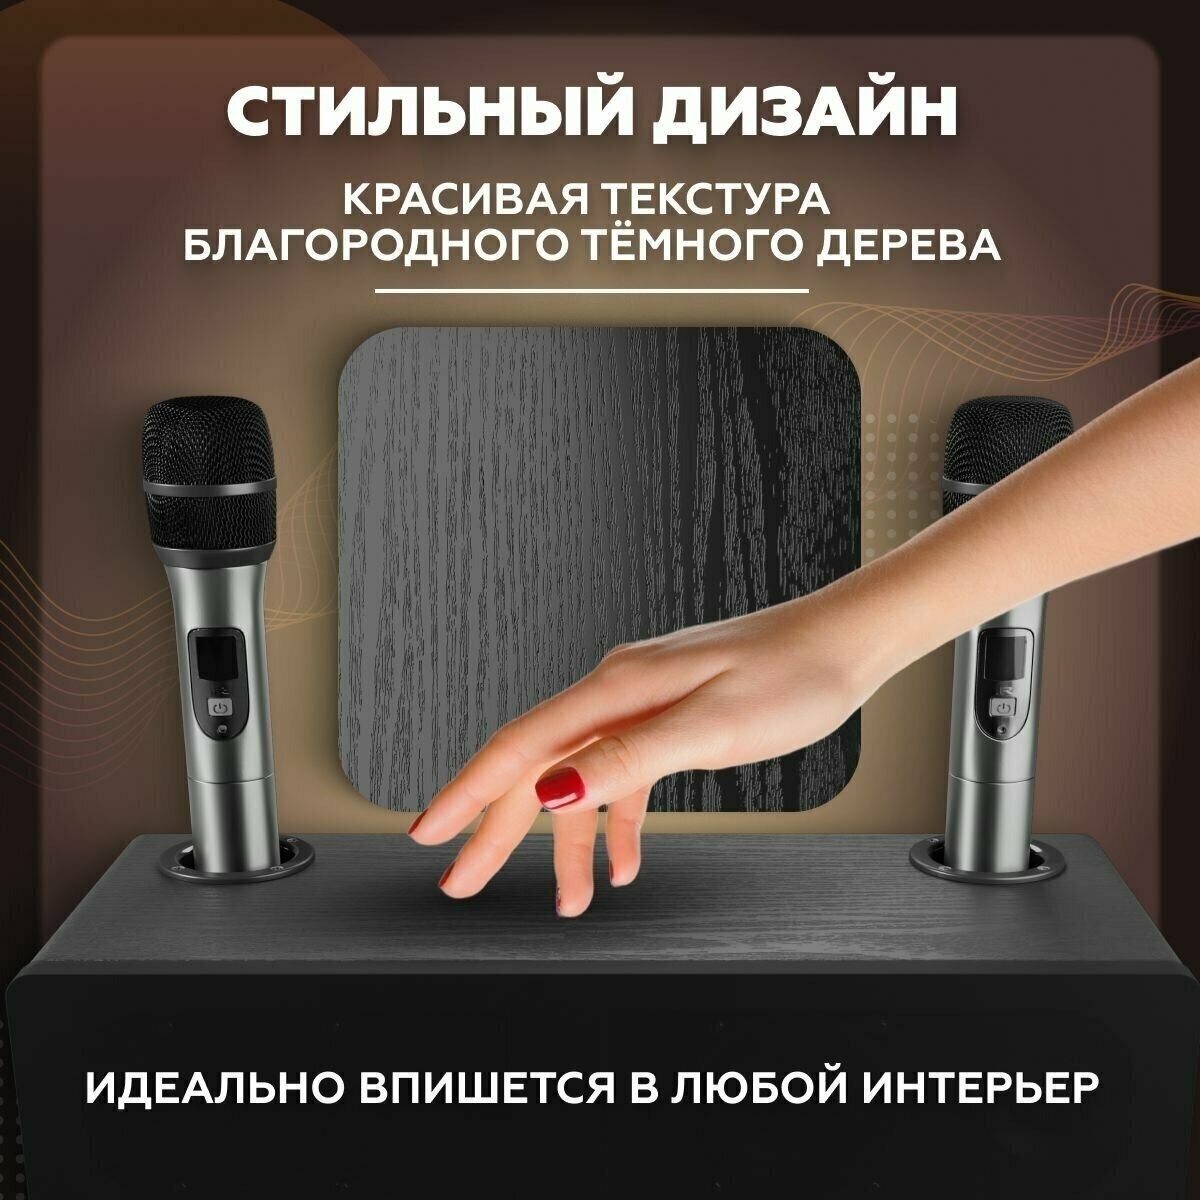 Караоке система для дома/телевизора с двумя беспроводными микрофонами портативной блютуз колонкой и регулятором громкости профессиональная мощная